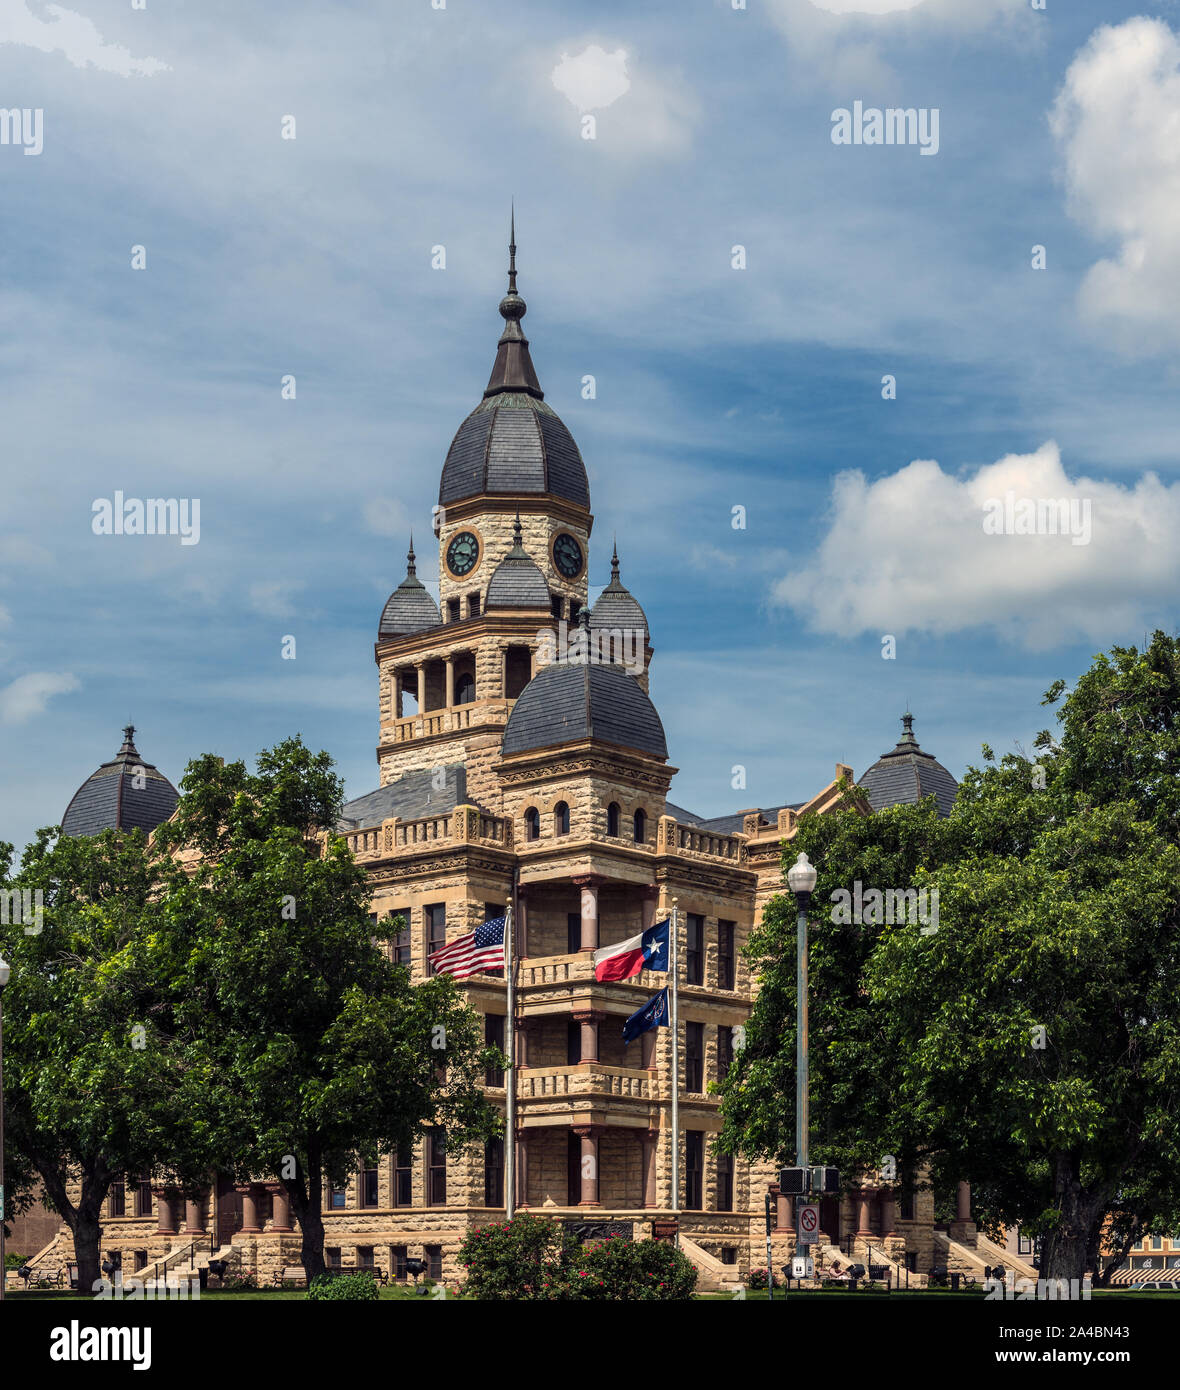 The Denton County Courthouse In Denton Texas Stock Photo Alamy